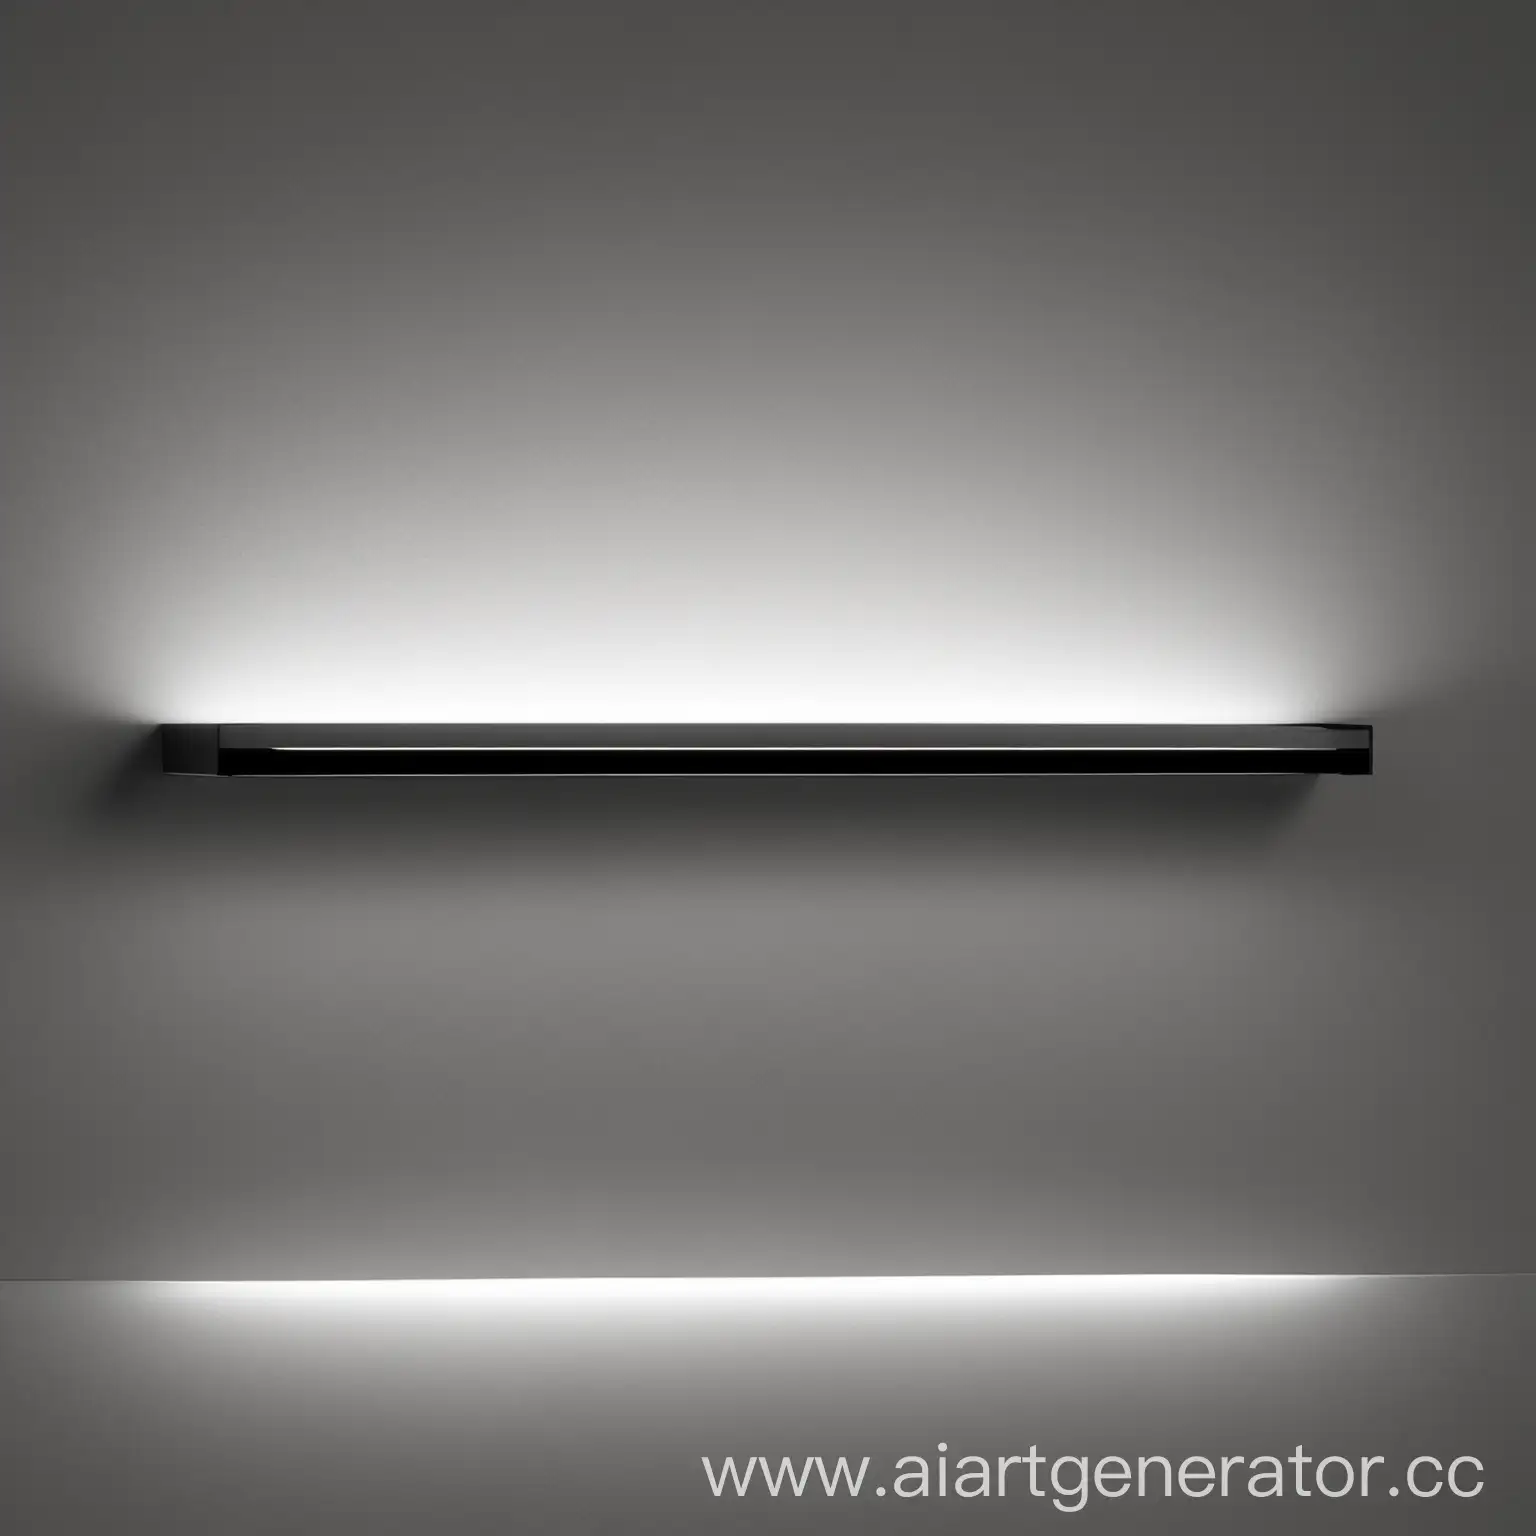 Elegant-Black-and-White-Shelf-Lighting-for-Engraving-Art